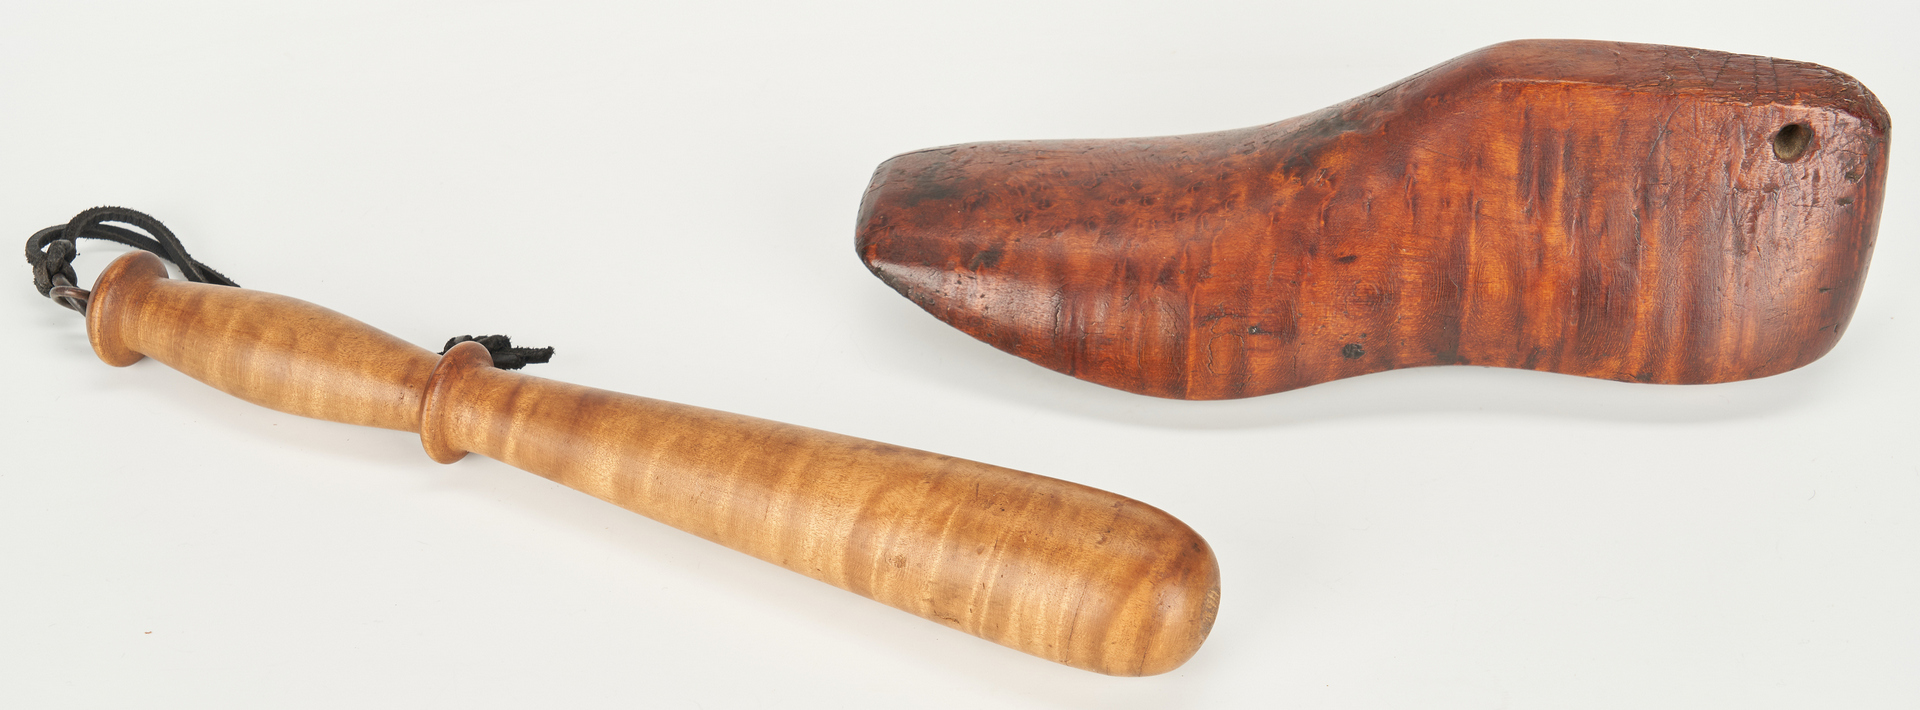 Lot 186: 9 Wood Tools, incl. Tiger Maple & Burl